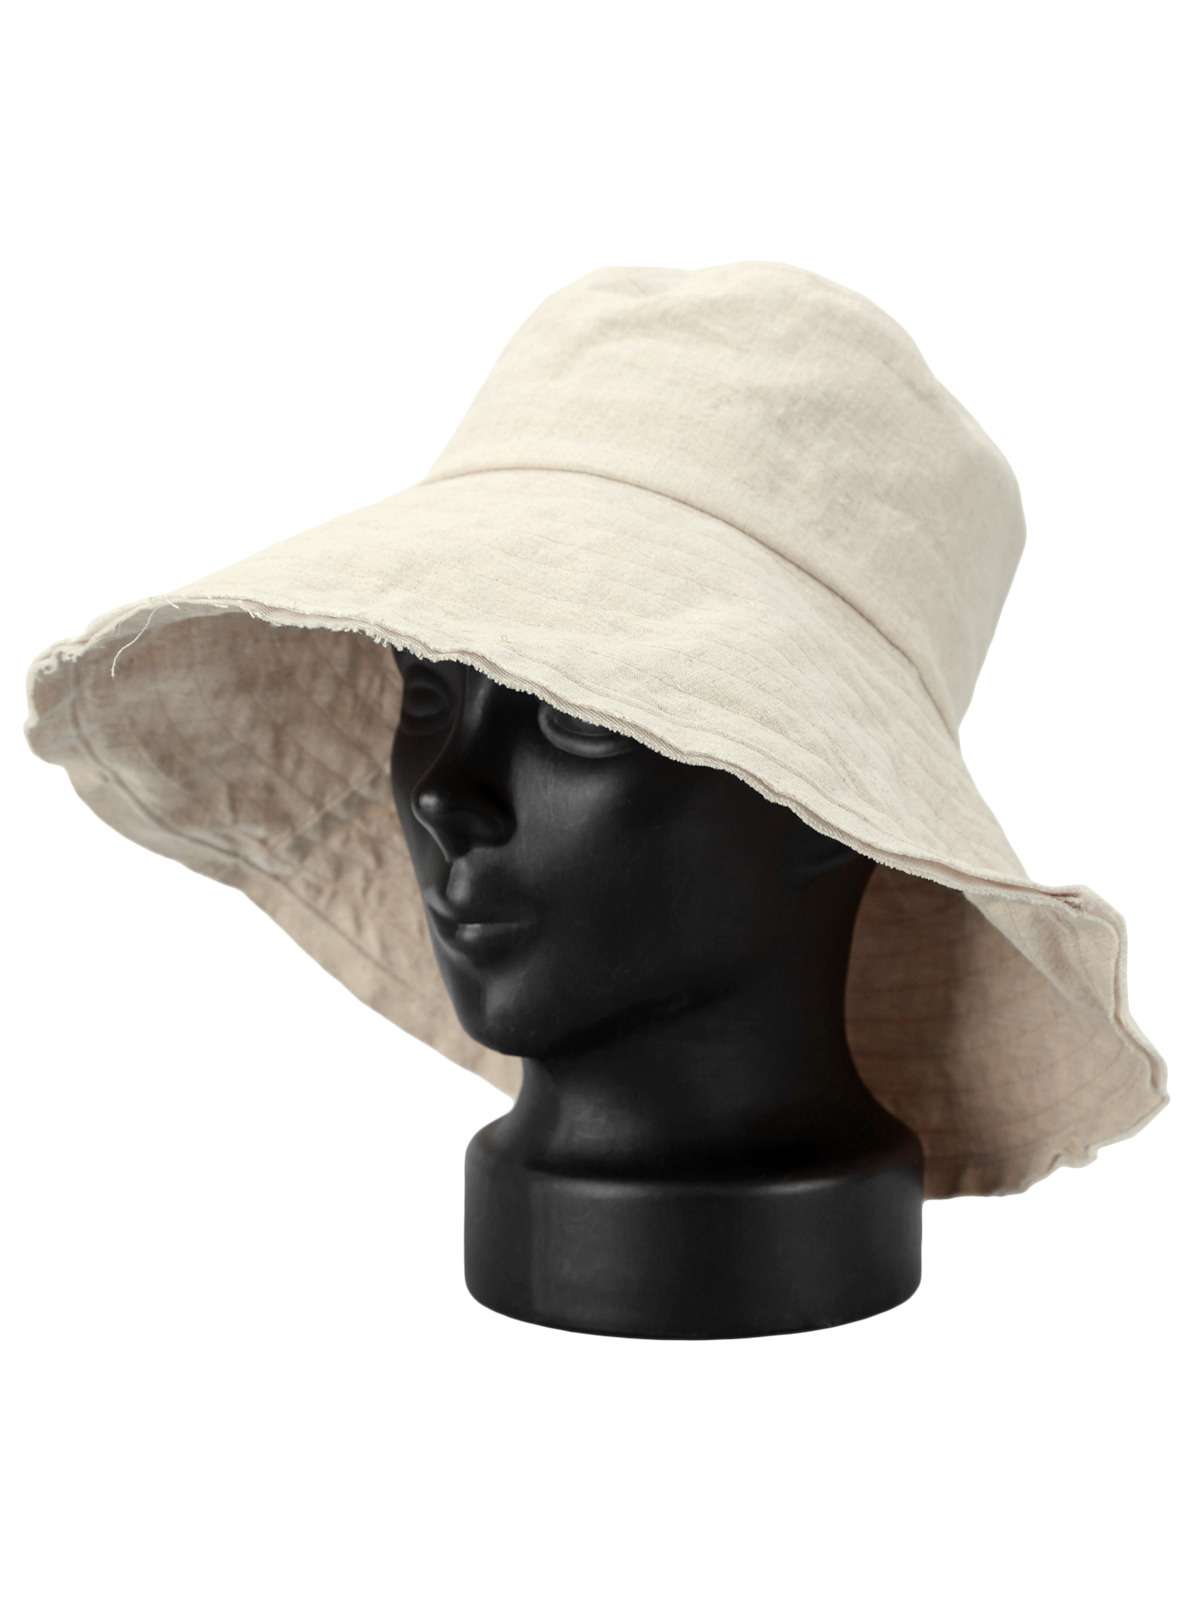 여성 벙거지 LDJH052 버킷햇 챙모자 모자